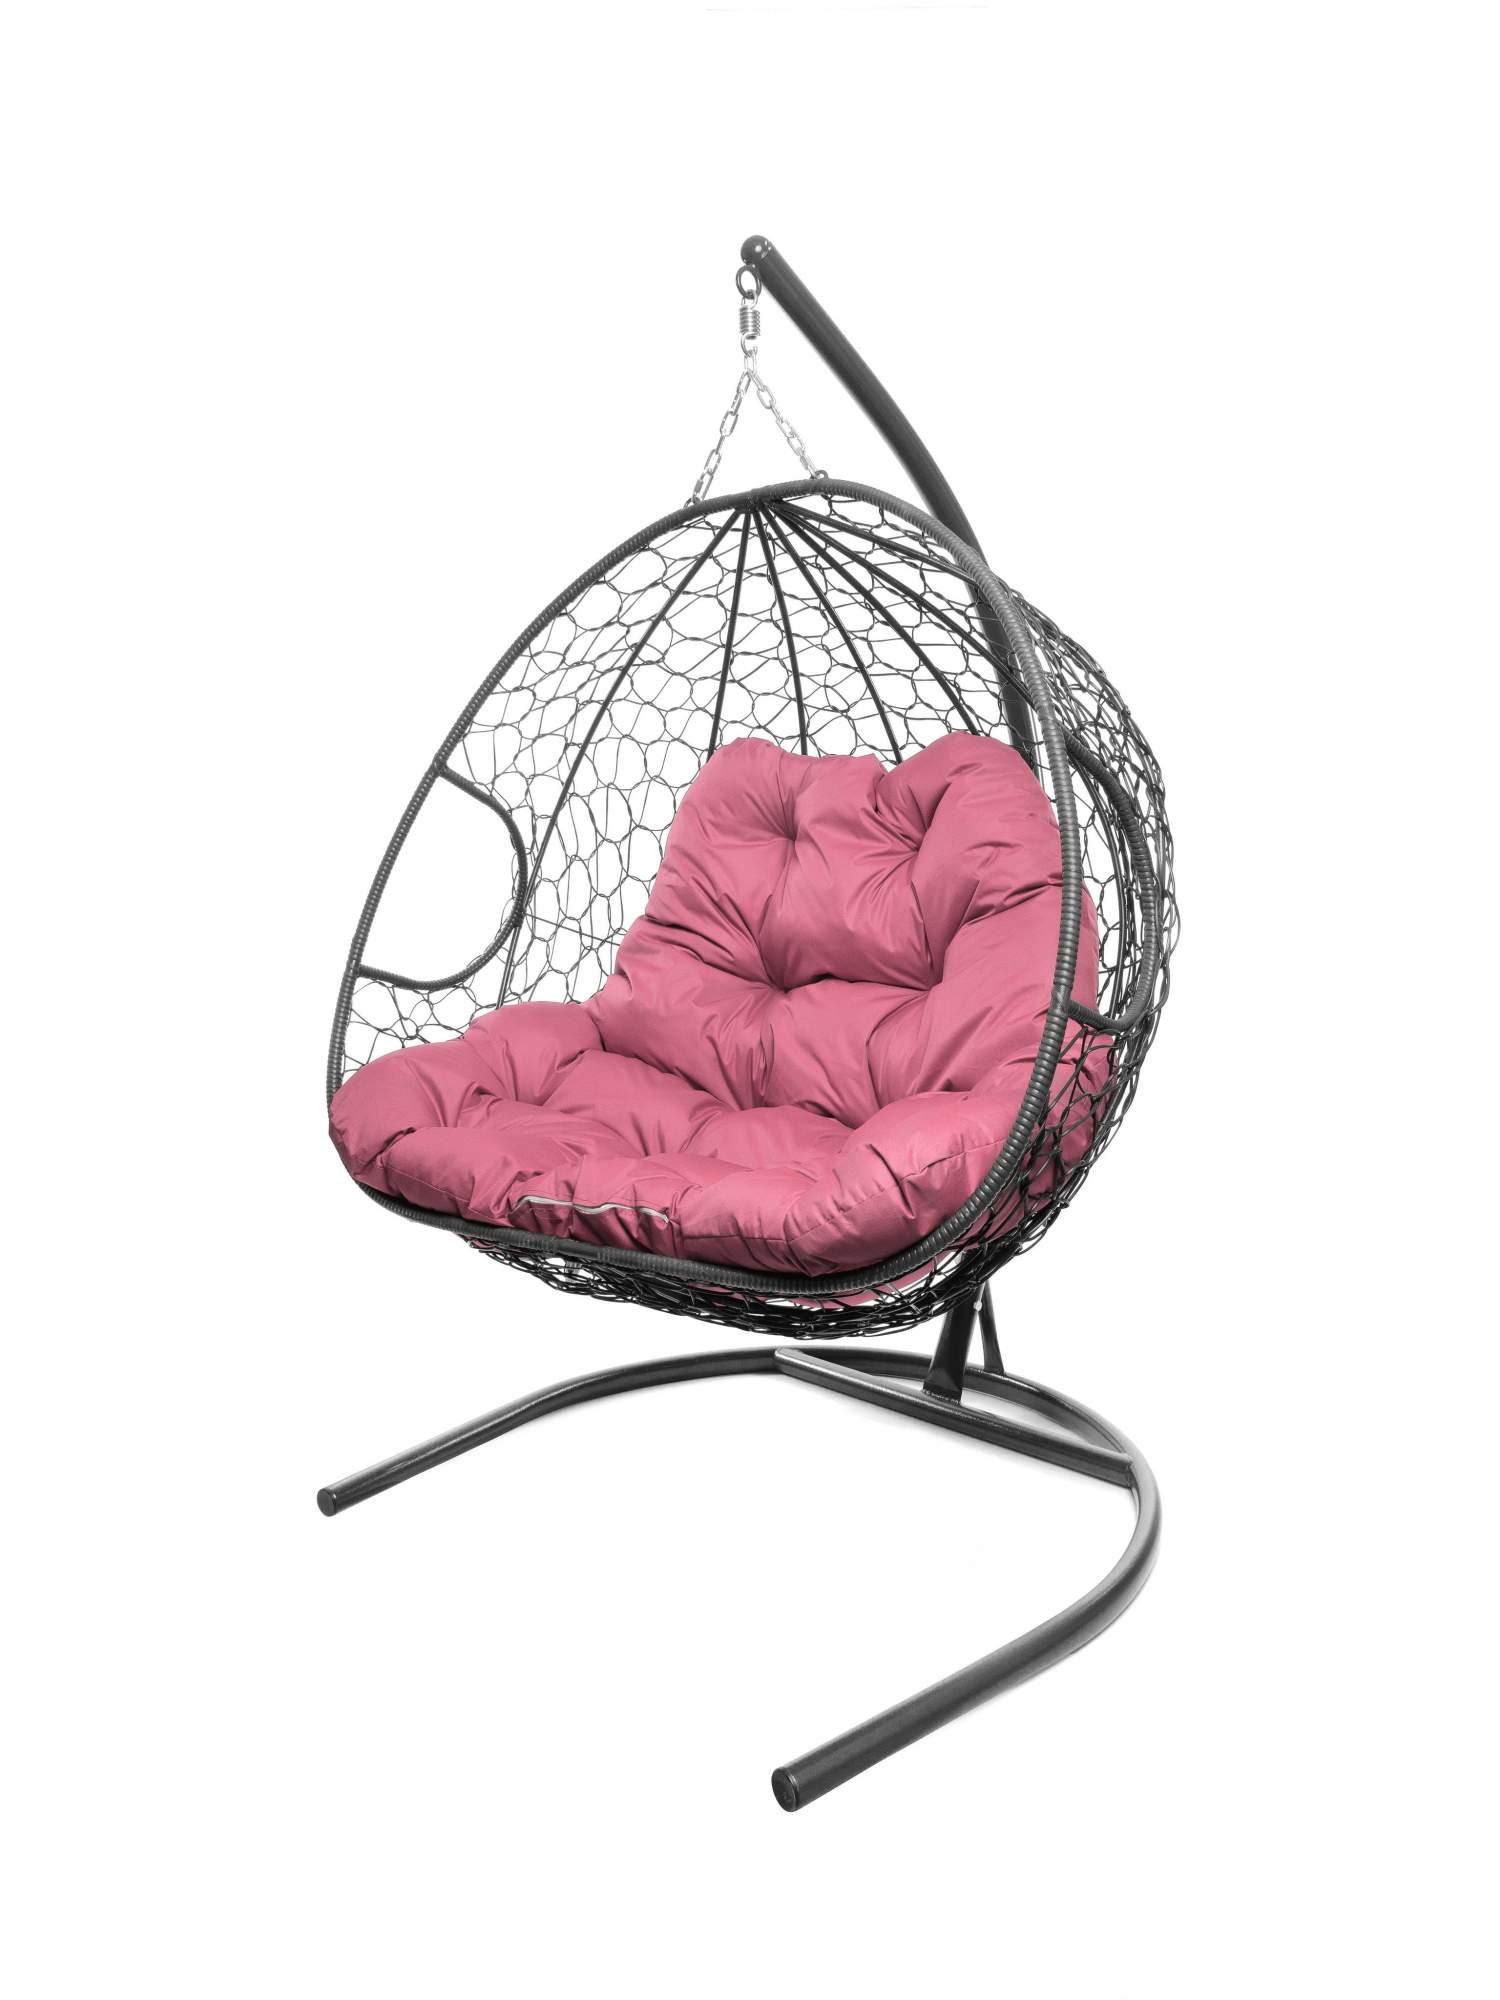 Подвесное кресло серое, Двойное ротанг 23071632 розовая подушка